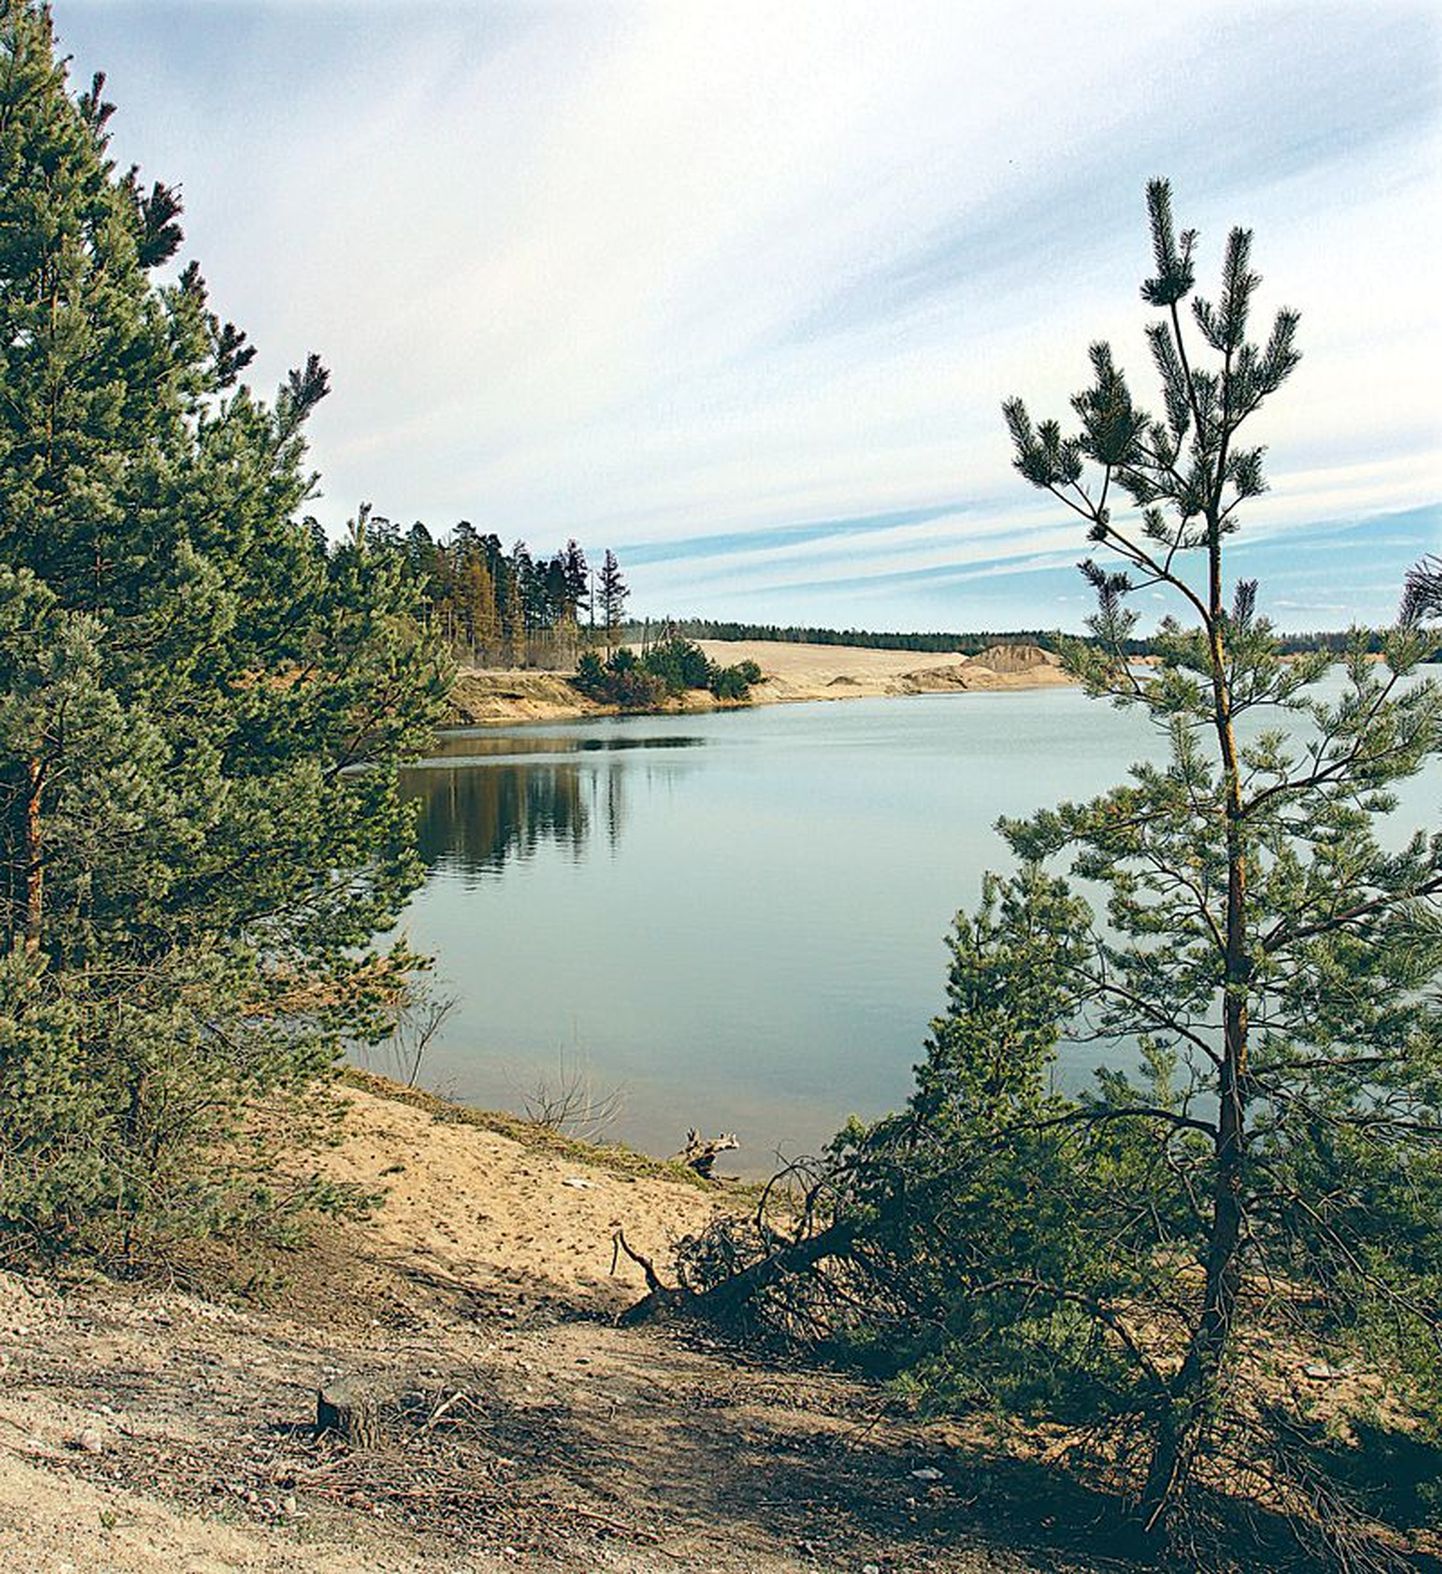 Keskkonnaregistrist kadus veekogude nimistust ka Raku järv, millist nime kannab ametlikult Männiku karjääridest suurem.